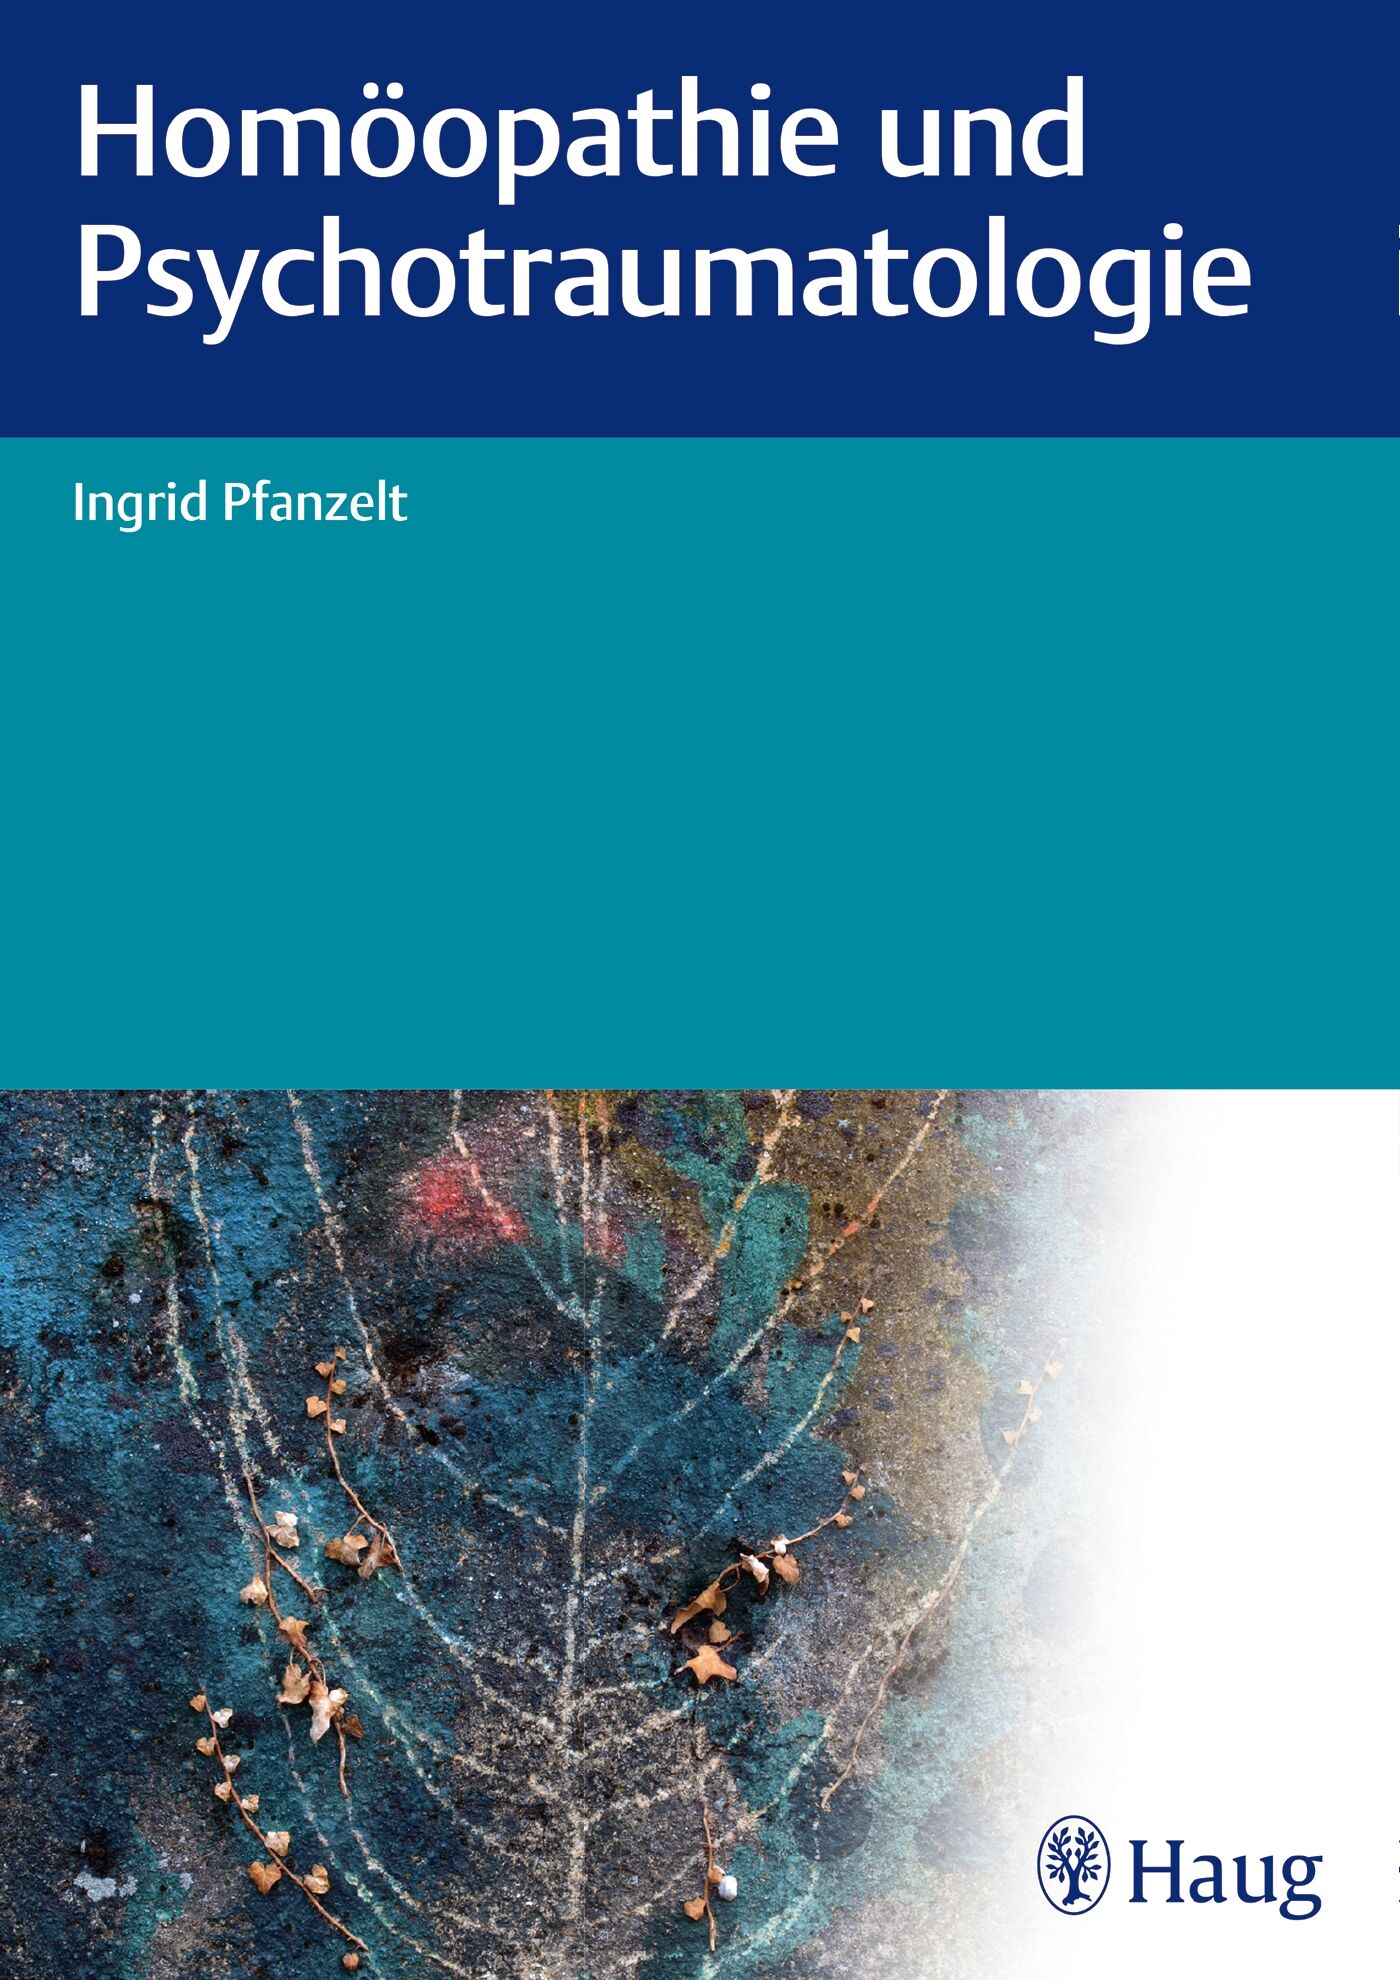 Homöopathie und Psychotraumatologie, 9783830476610